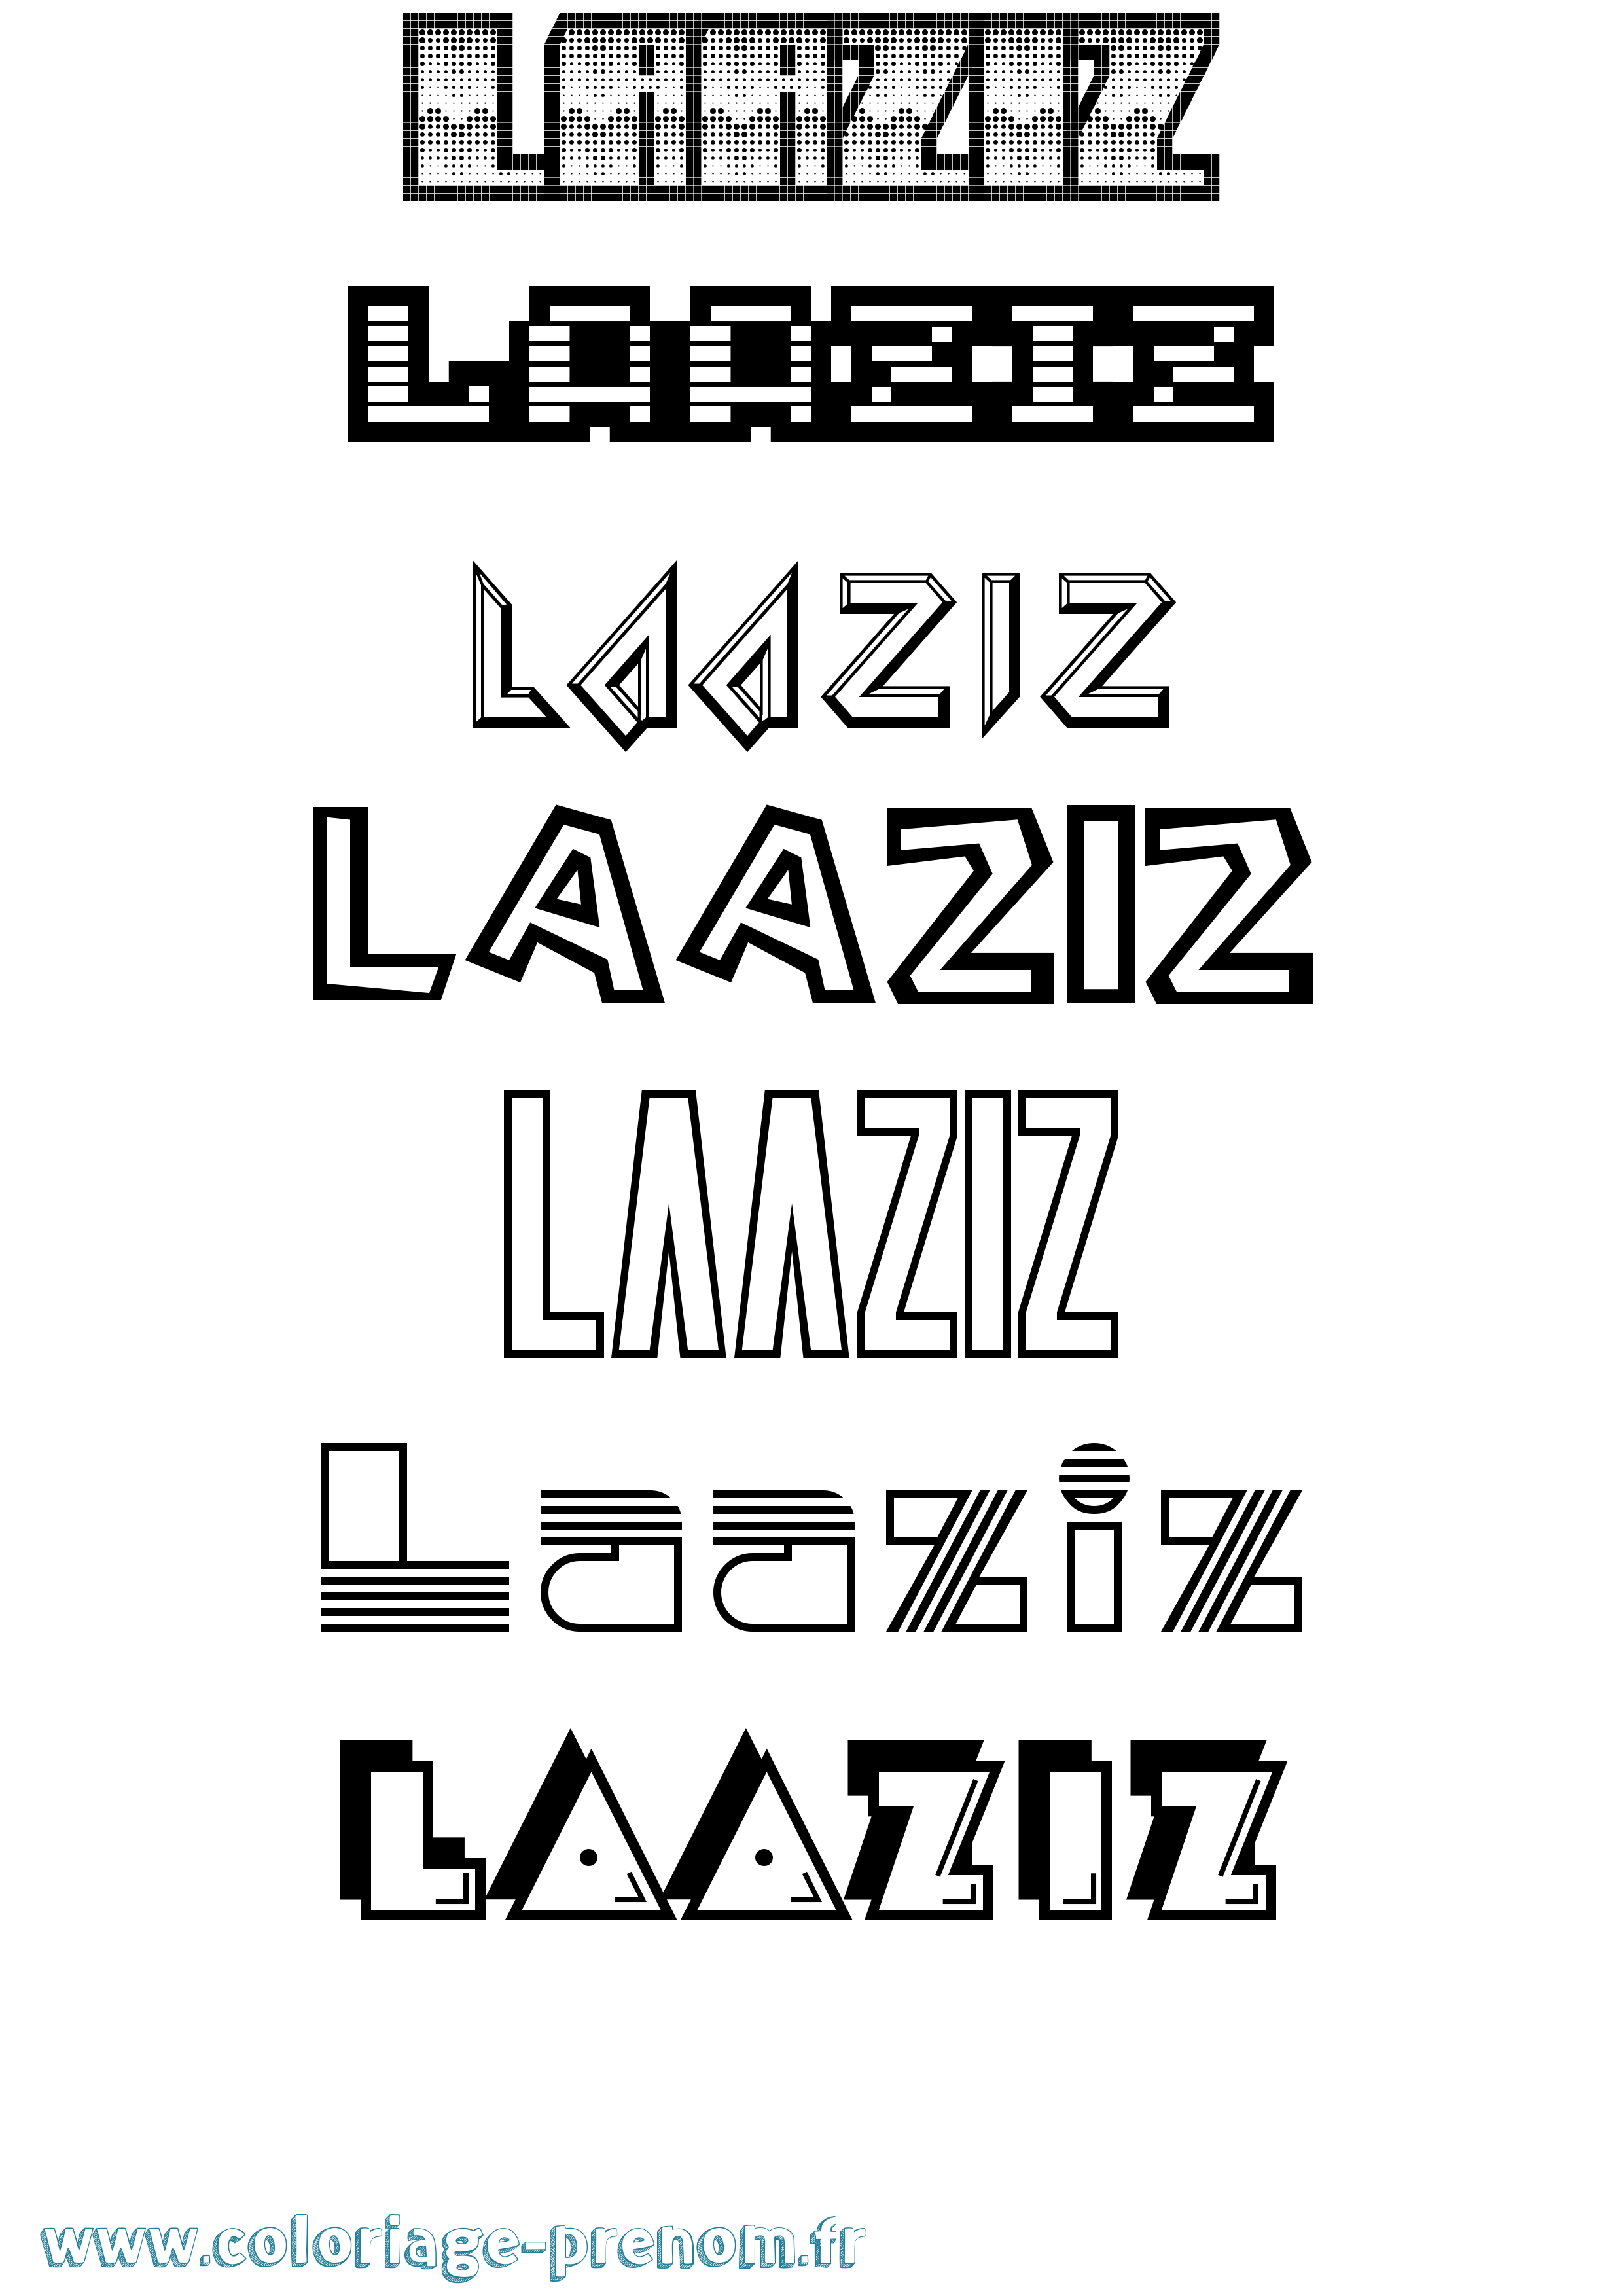 Coloriage prénom Laaziz Jeux Vidéos